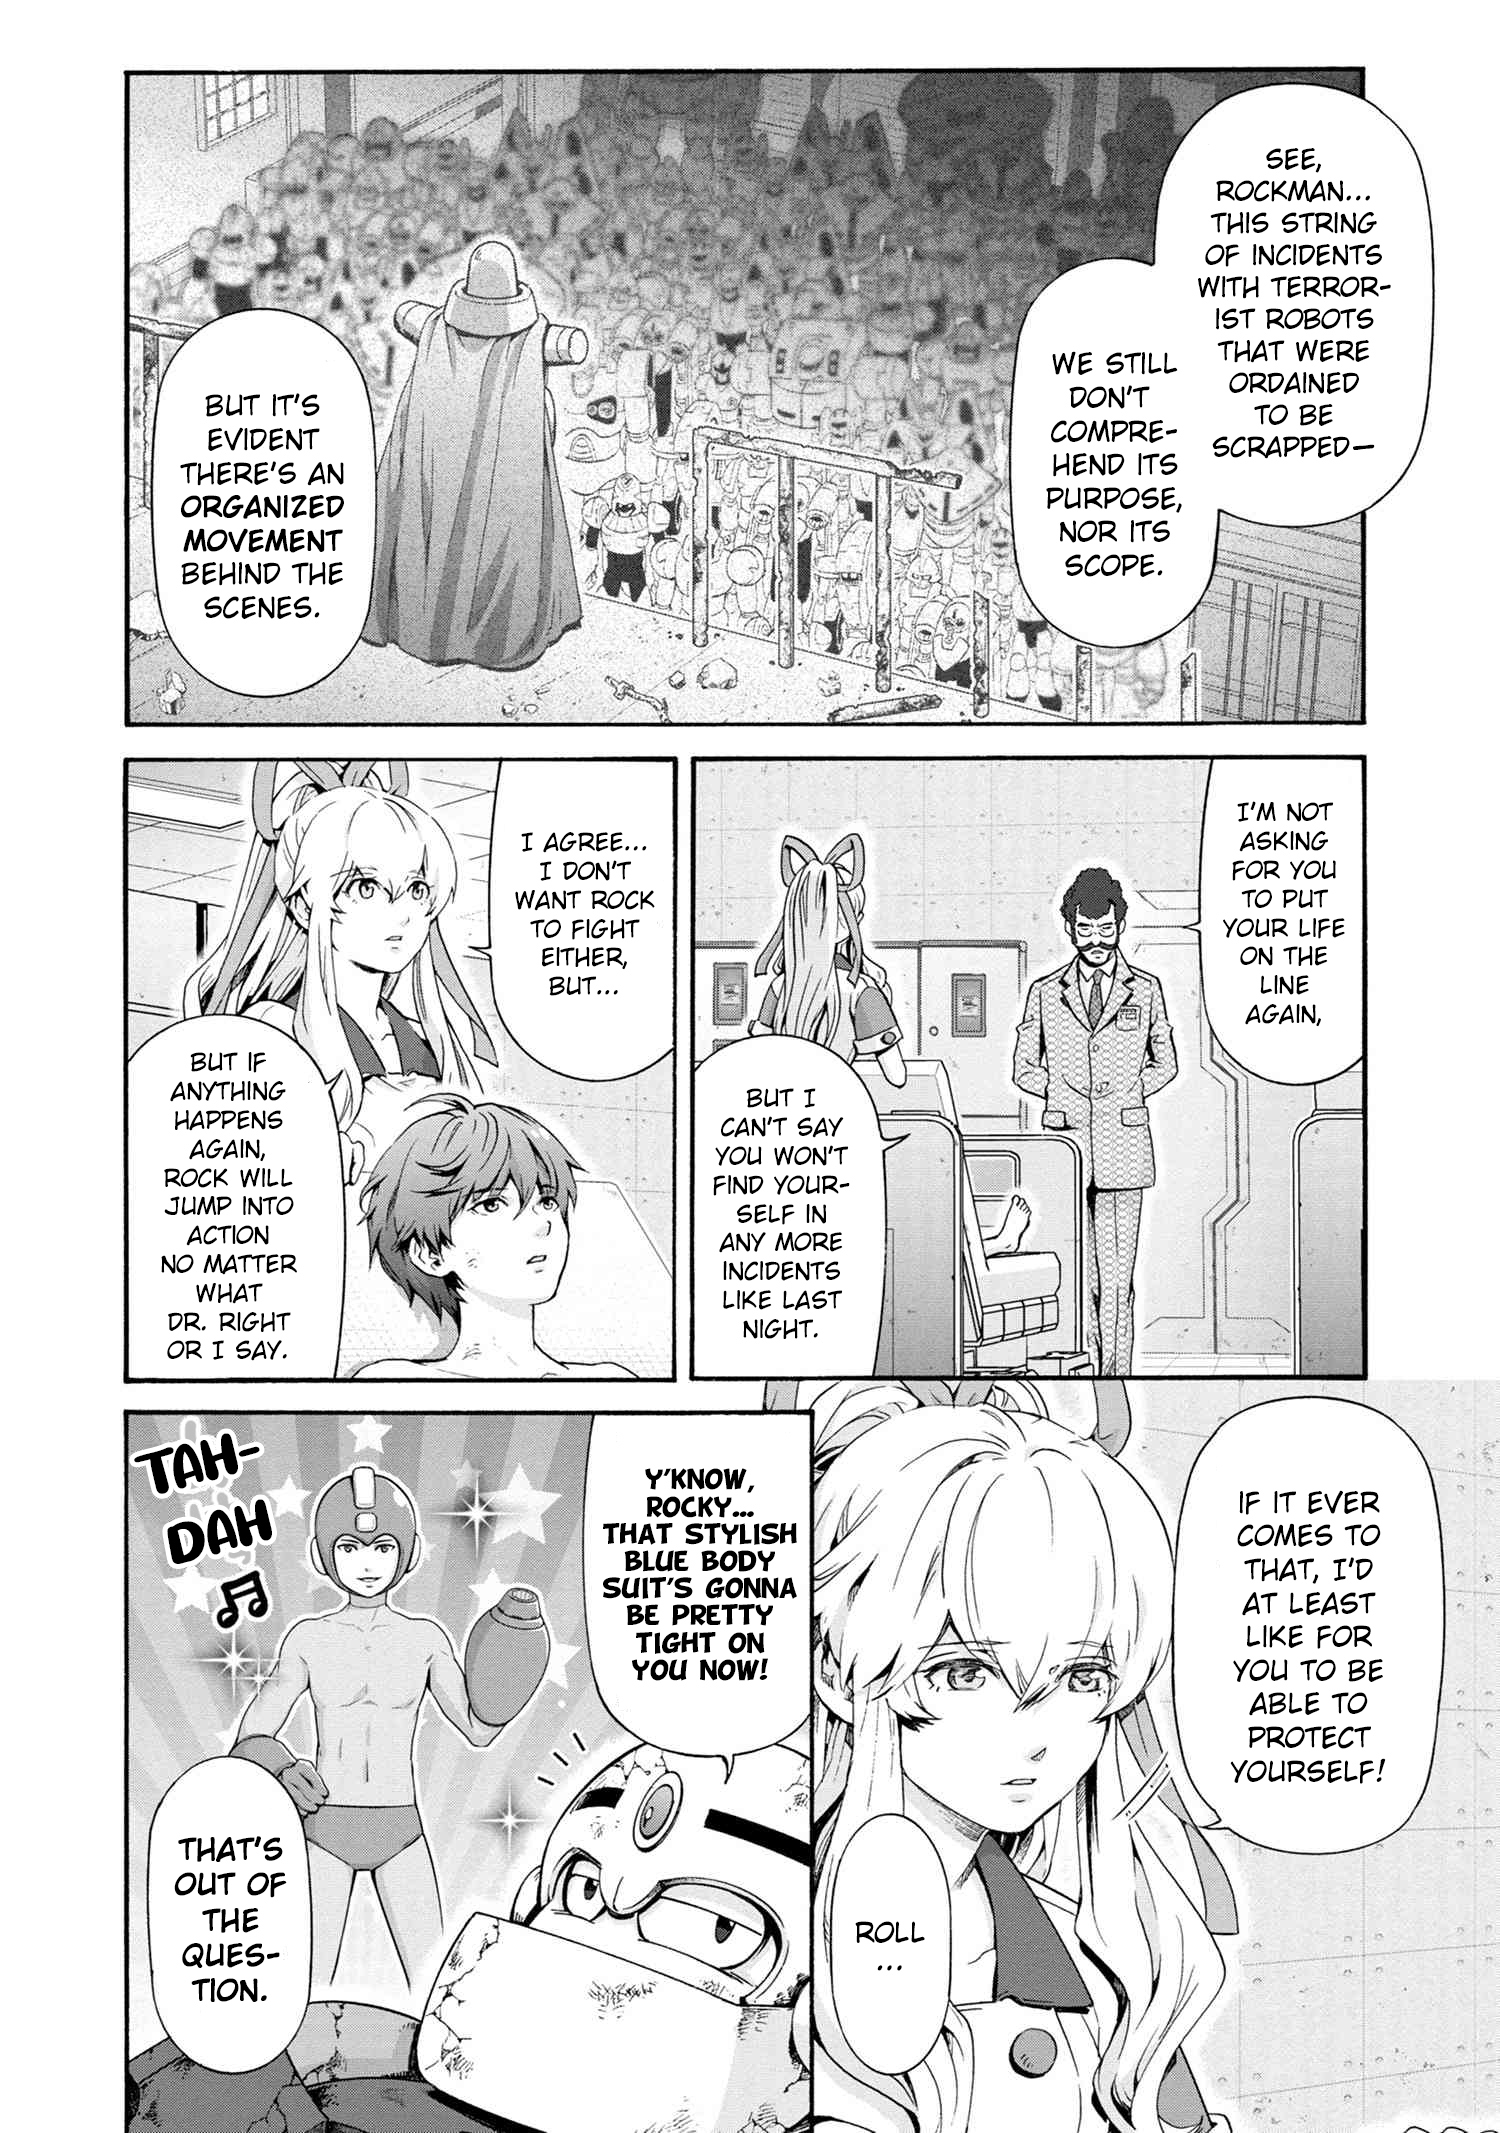 Rockman-San - Page 4